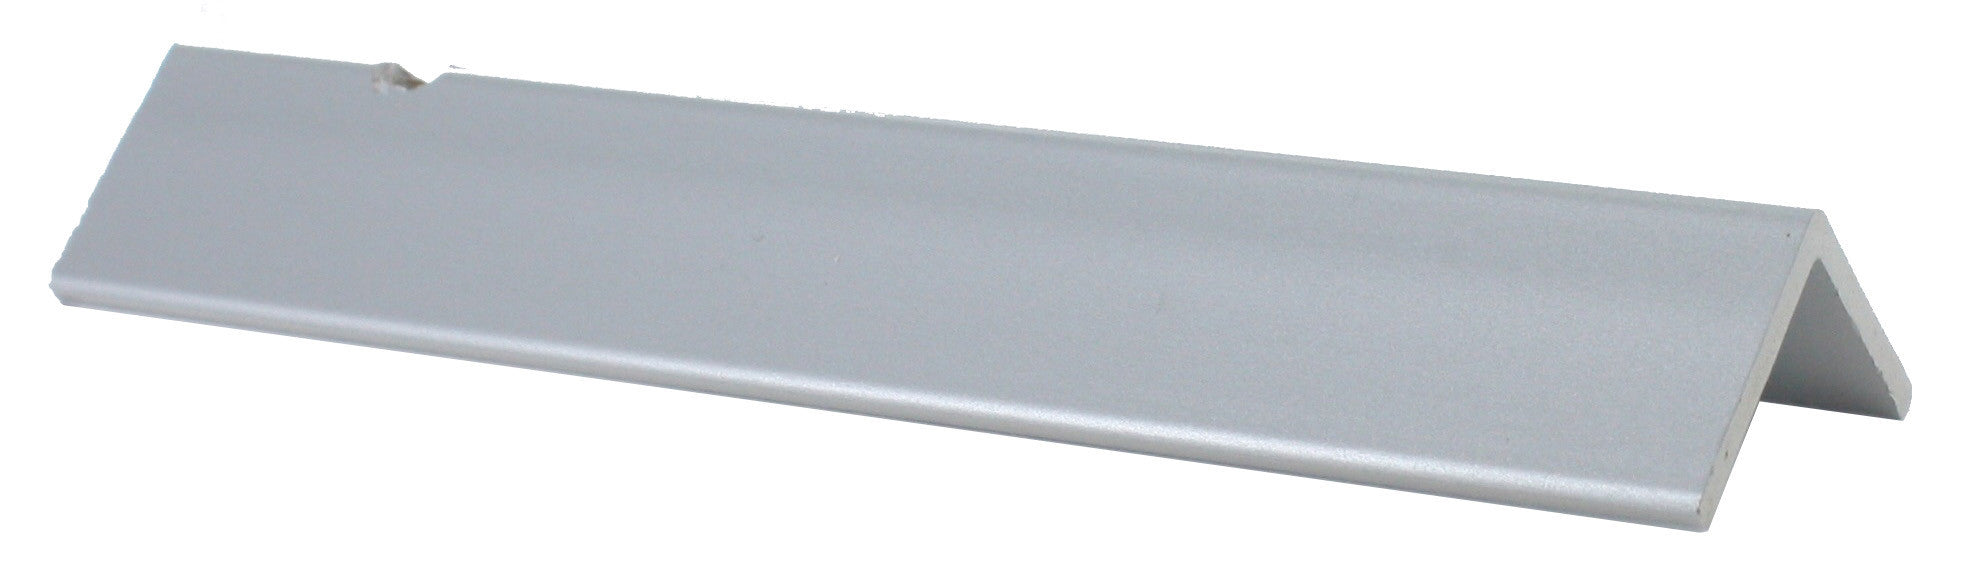 Paraspigolo mm 25x25 pvc espanso ml 3 argento FORTE